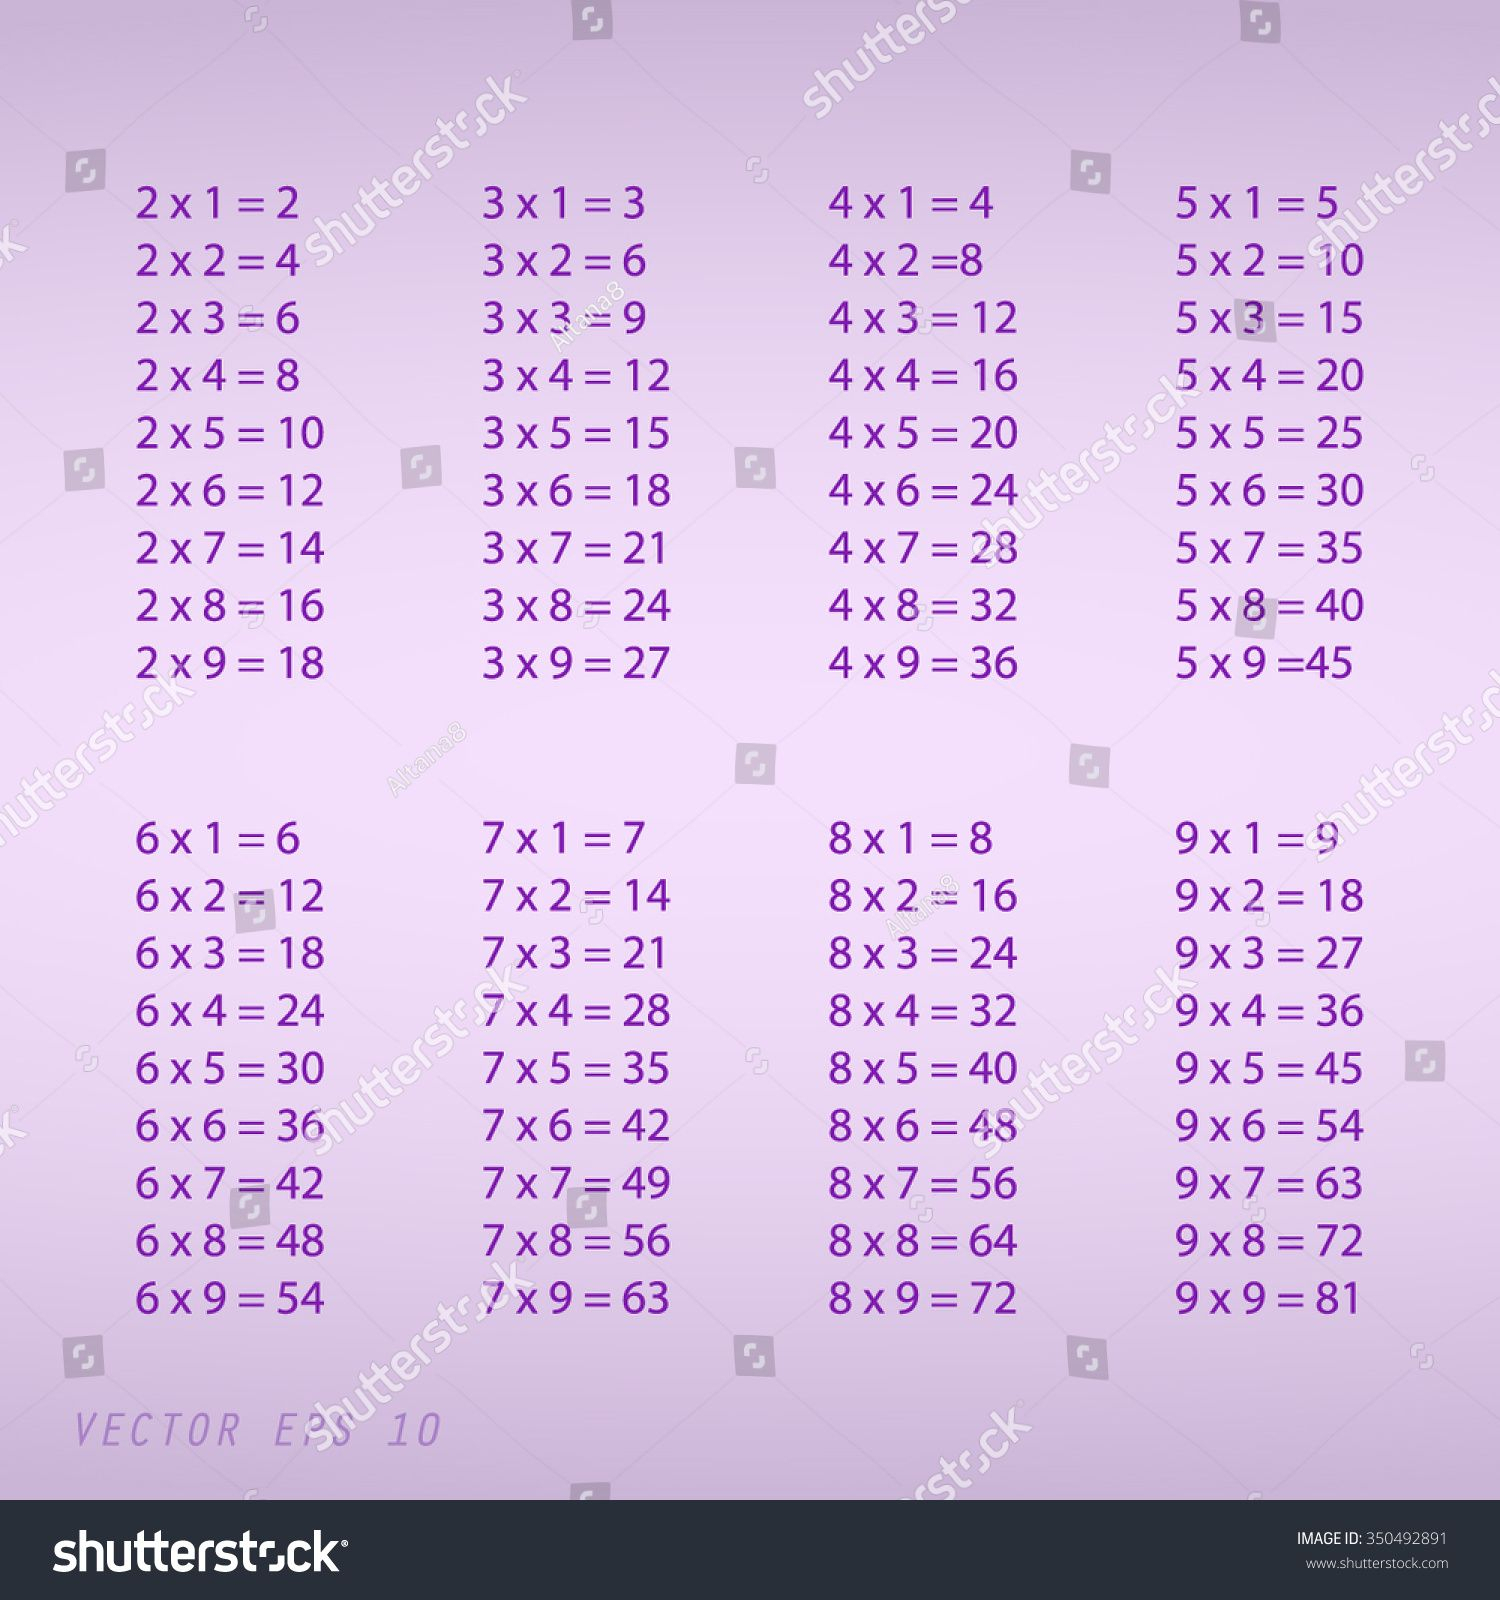 9X9 Multiplication Table | Multiplication Table, Geometry with Printable 9 X 9 Multiplication Table